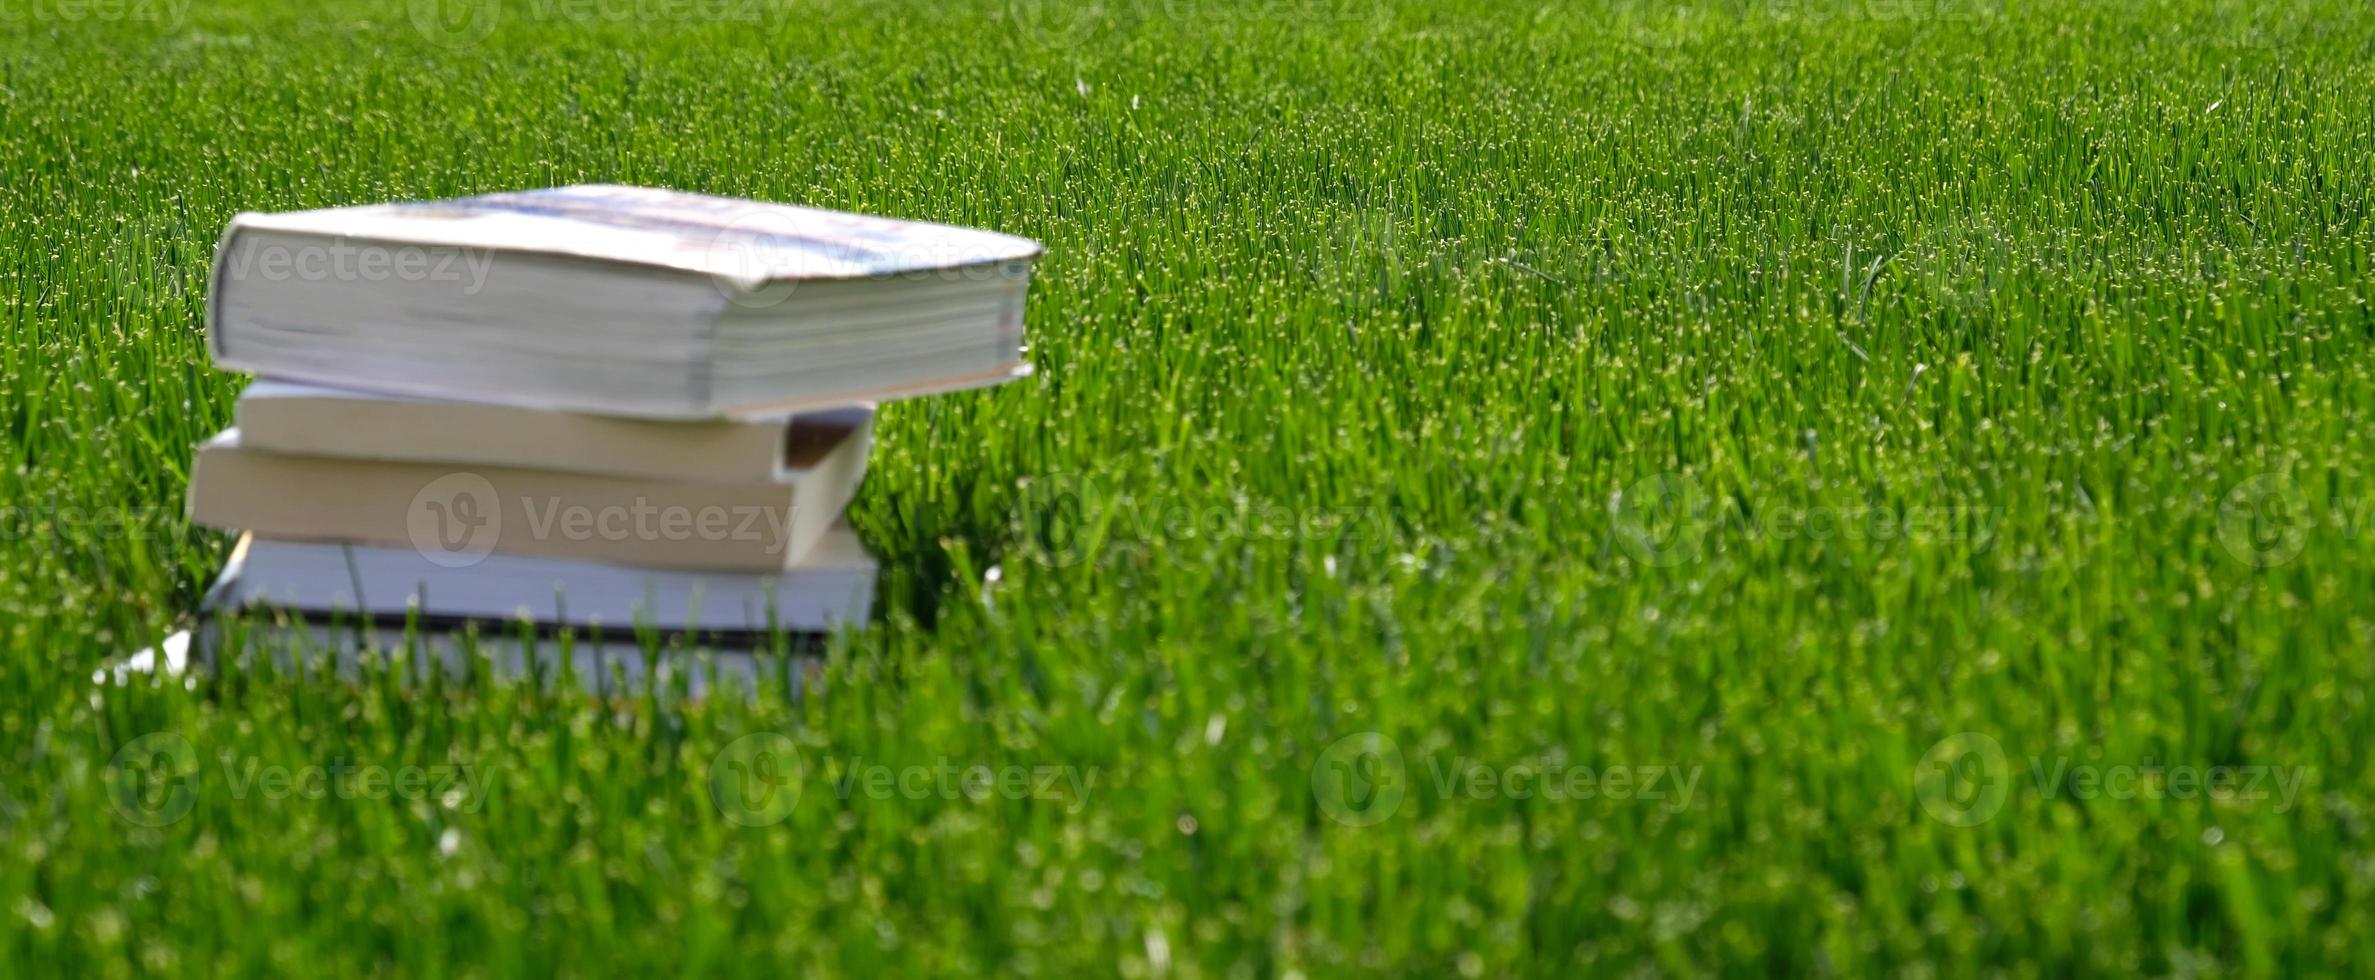 pila de libros en la hierba verde en el campo en un día soleado. concepto de lectura y conocimiento. banner con espacio de copia para texto. De vuelta a la escuela. pila de libros antiguos de tapa dura. foto